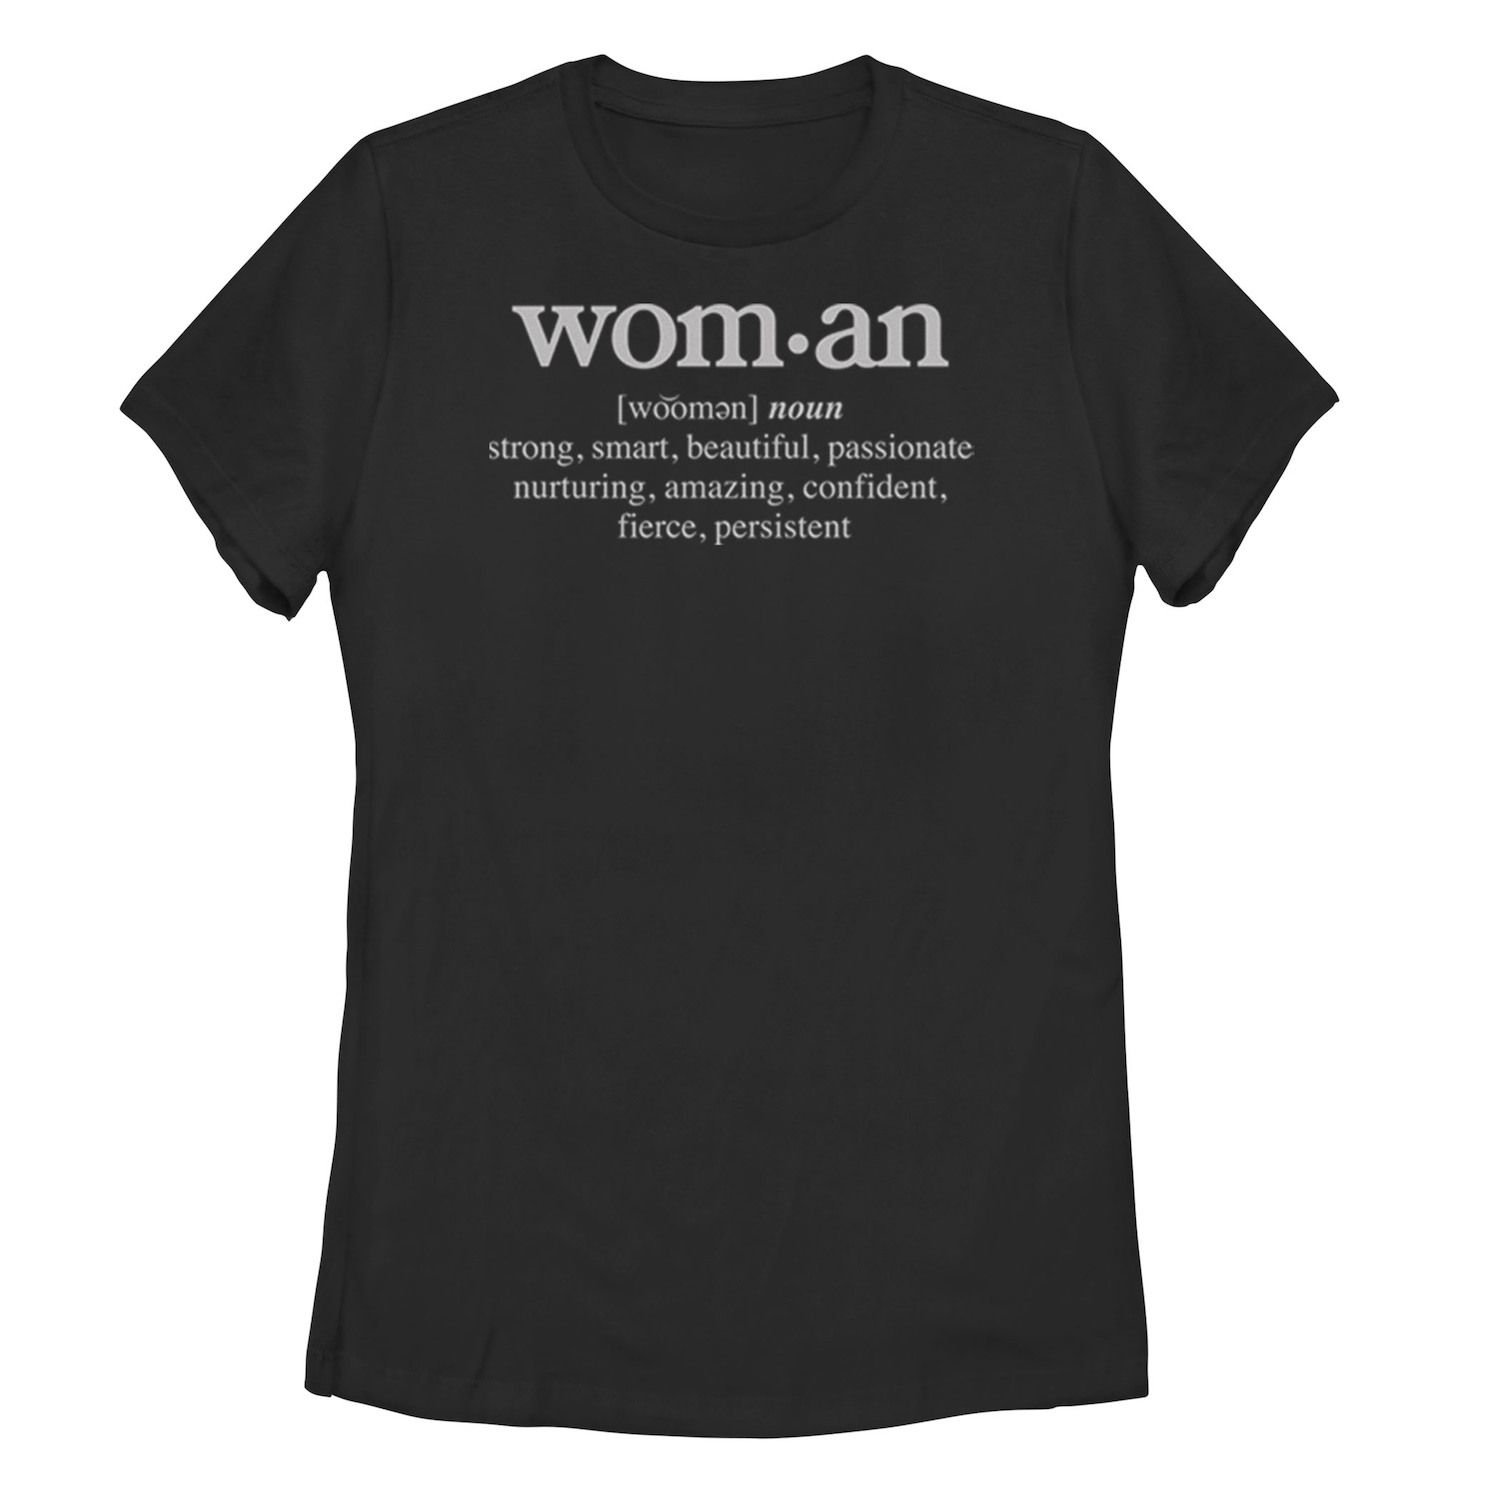 Женская футболка с графическим рисунком для юниоров счастливая осенняя женская футболка с графическим рисунком модная осенняя футболка с рисунком тыквы топы для трюков или подарков наряды